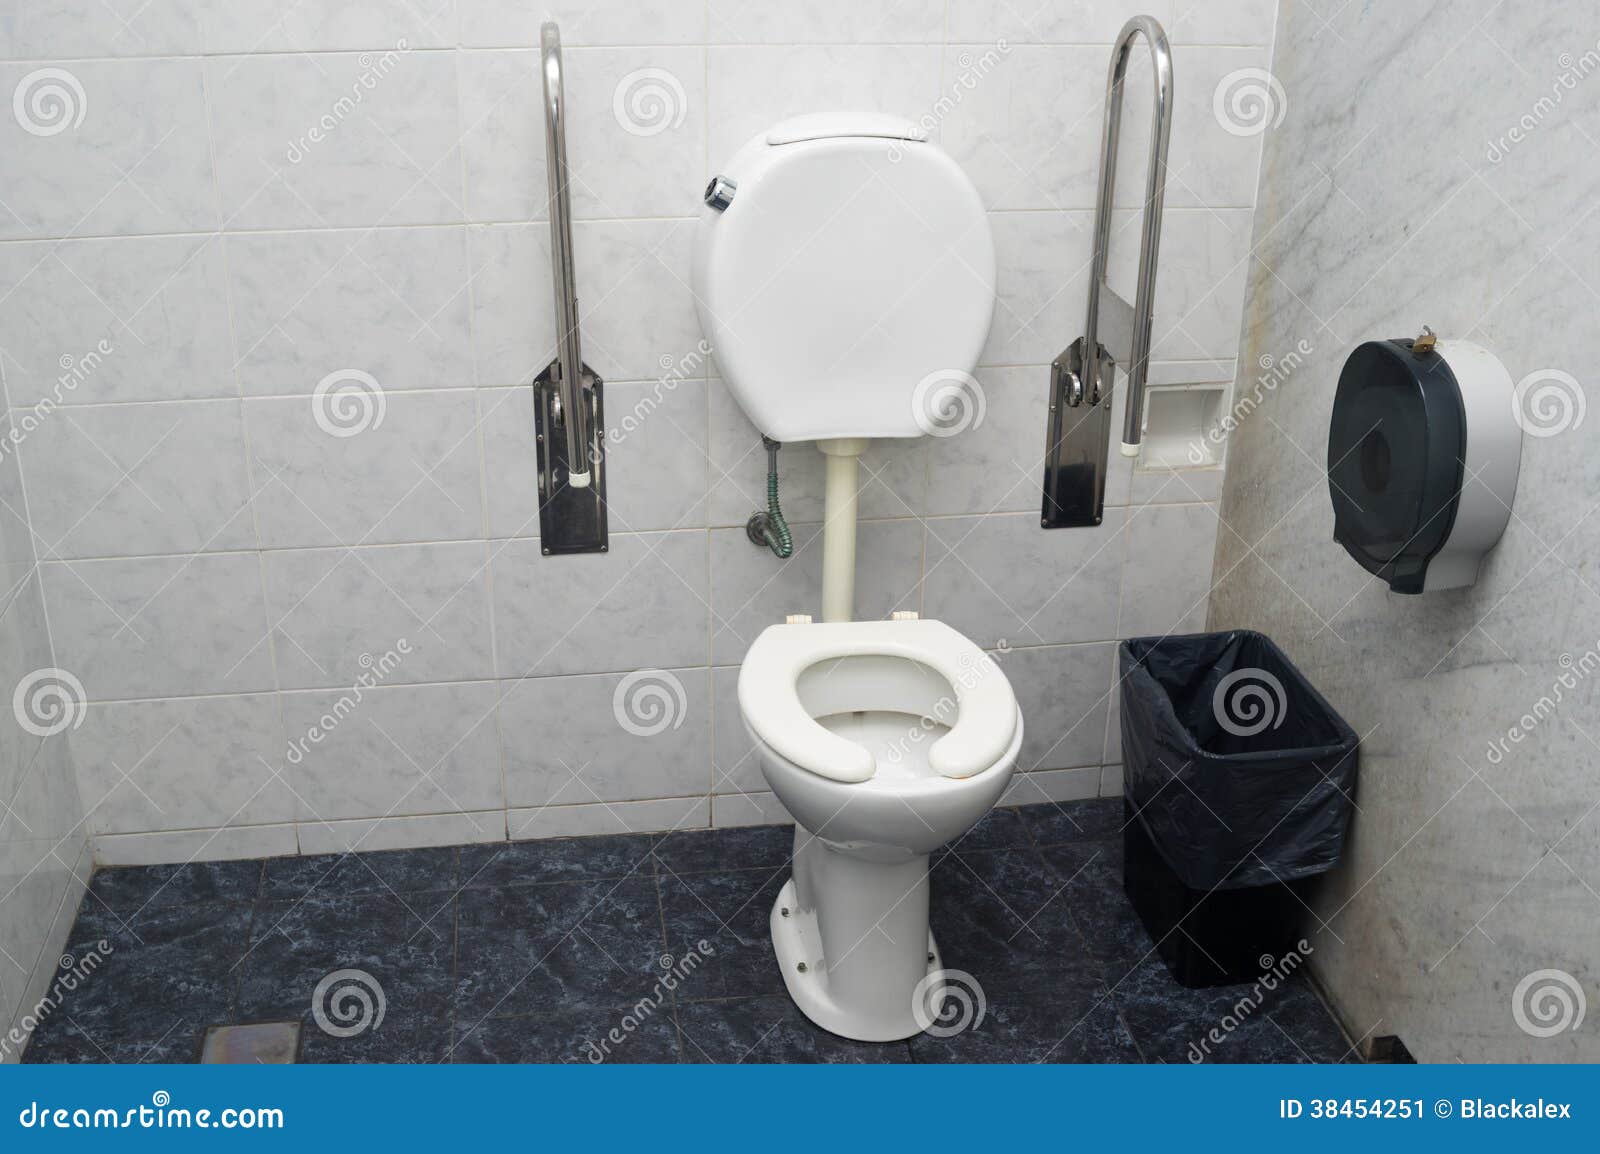 tobben Verbinding verbroken Hinder Toilet voor gehandicapten stock afbeelding. Image of toilet - 38454251